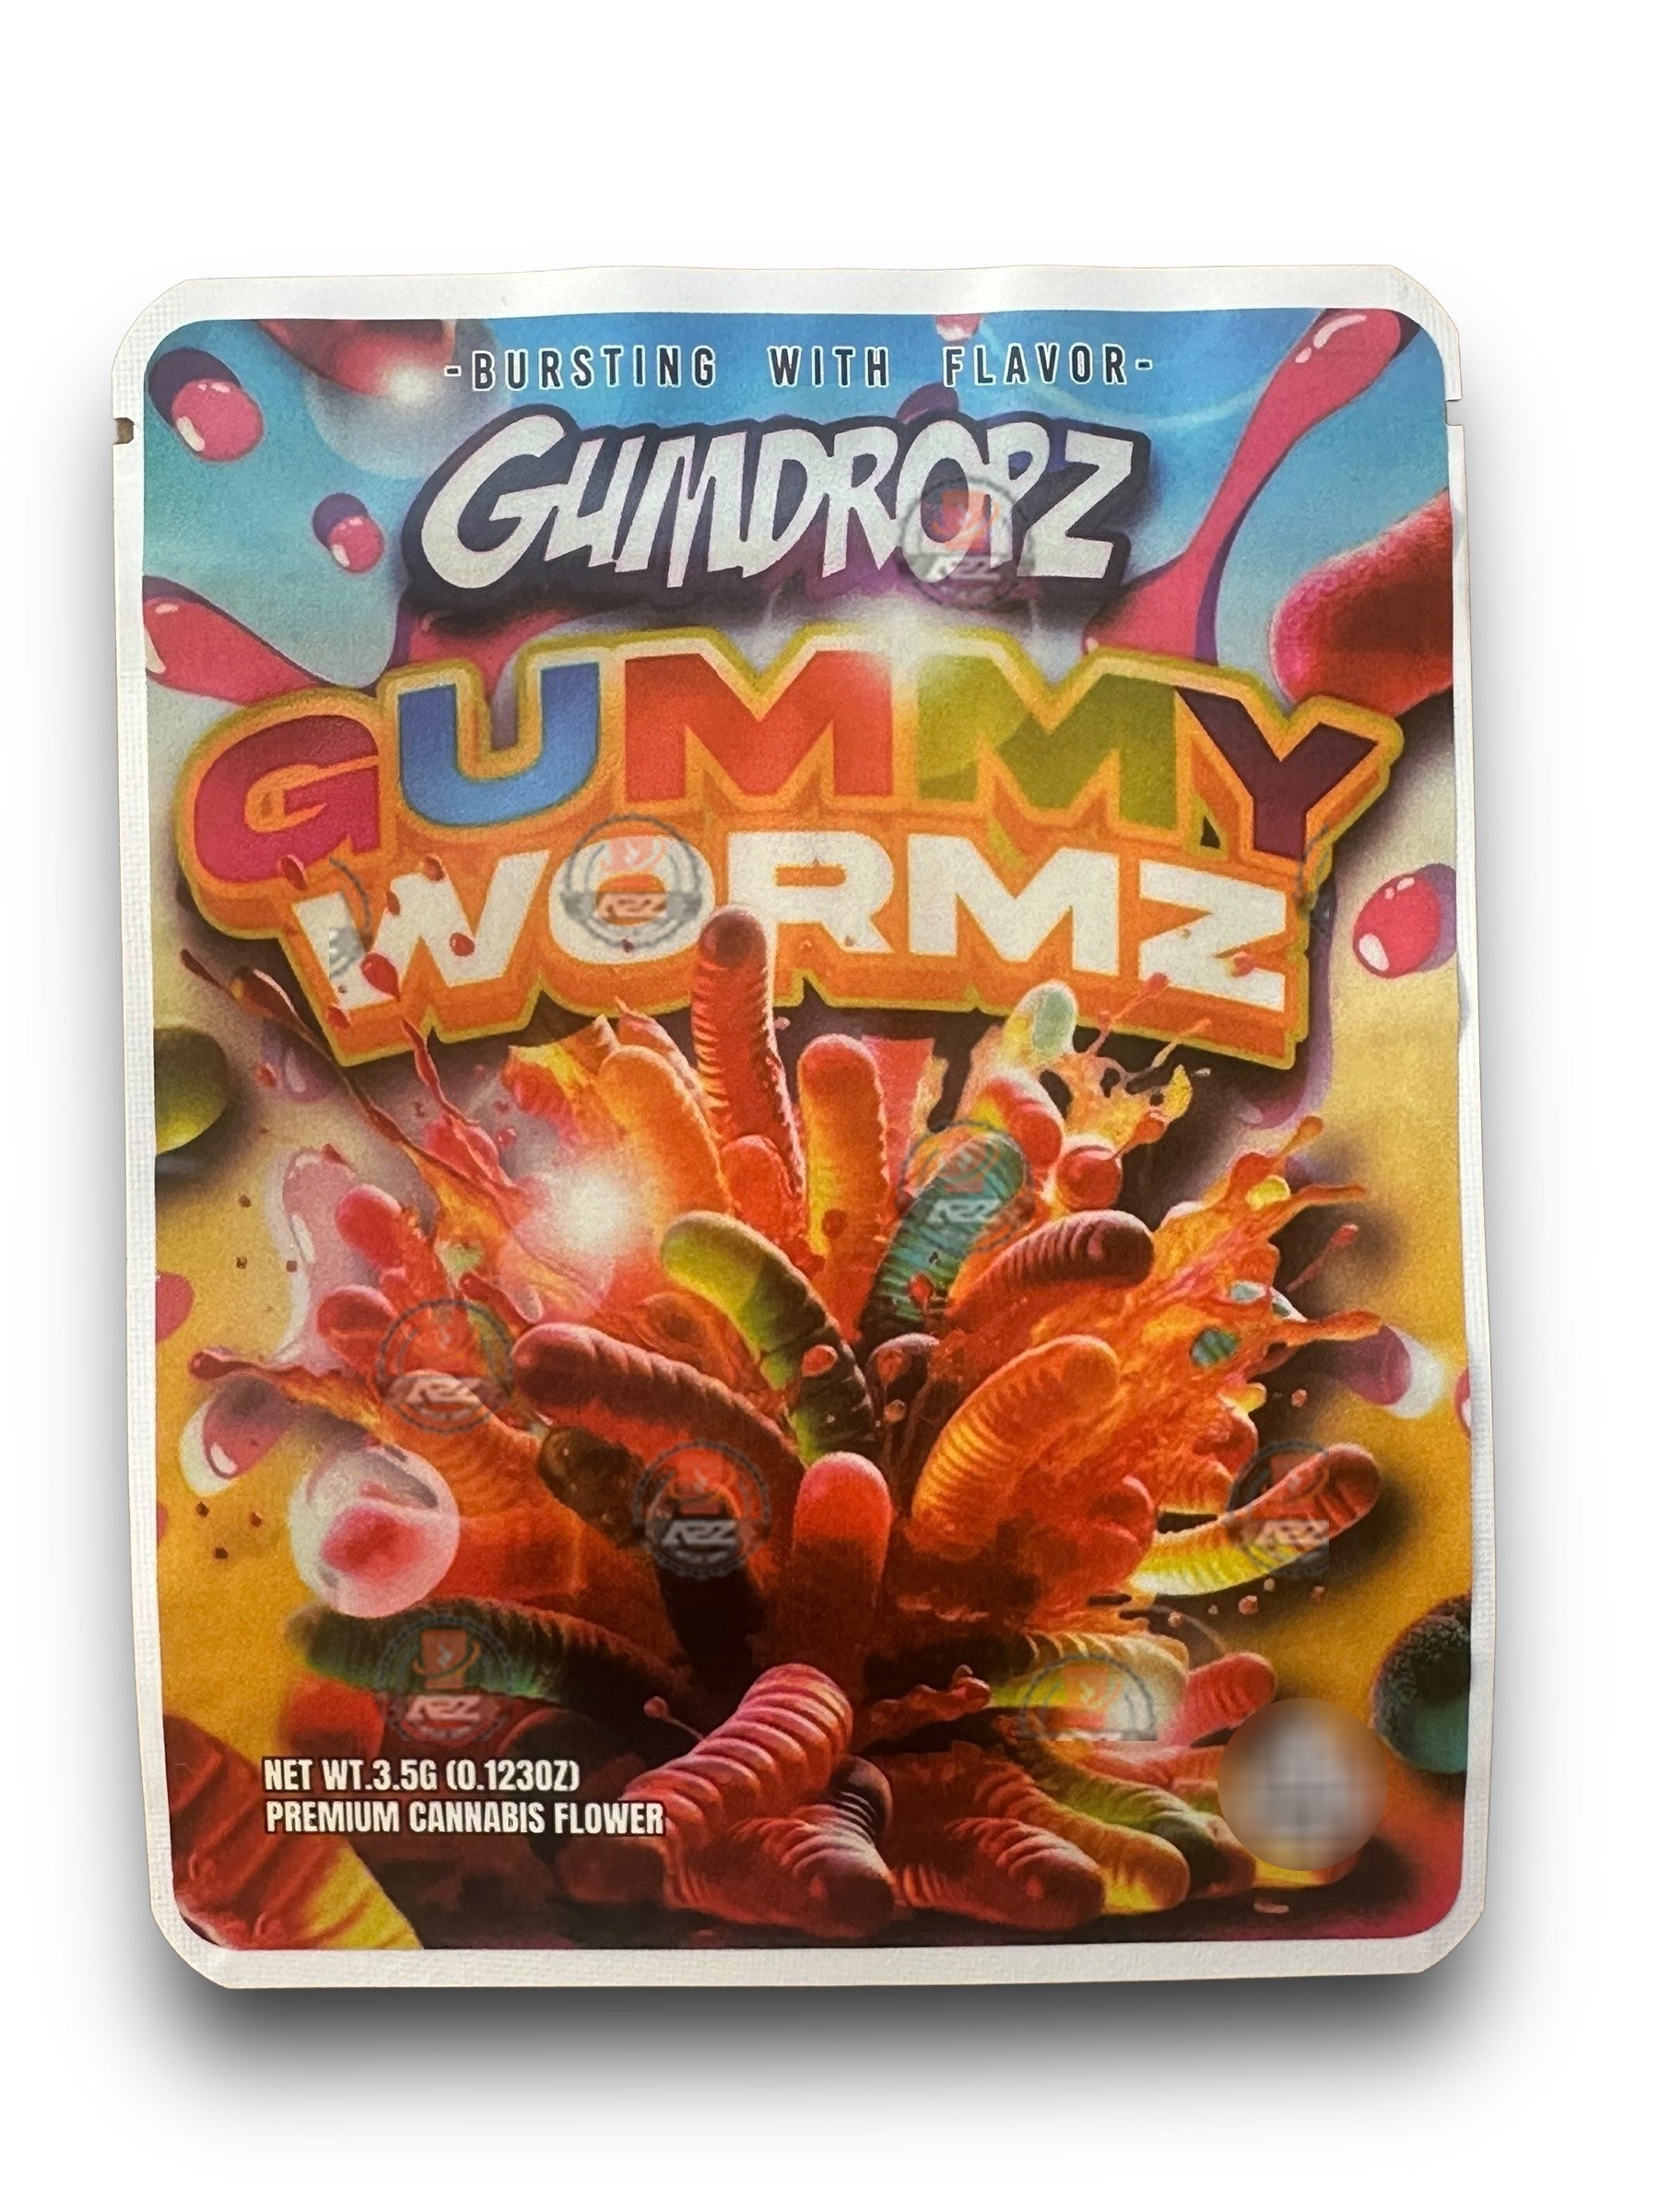 Sprinklez Gumdropz Gummy Wormz 3.5G Mylar Bags -With stickers and label